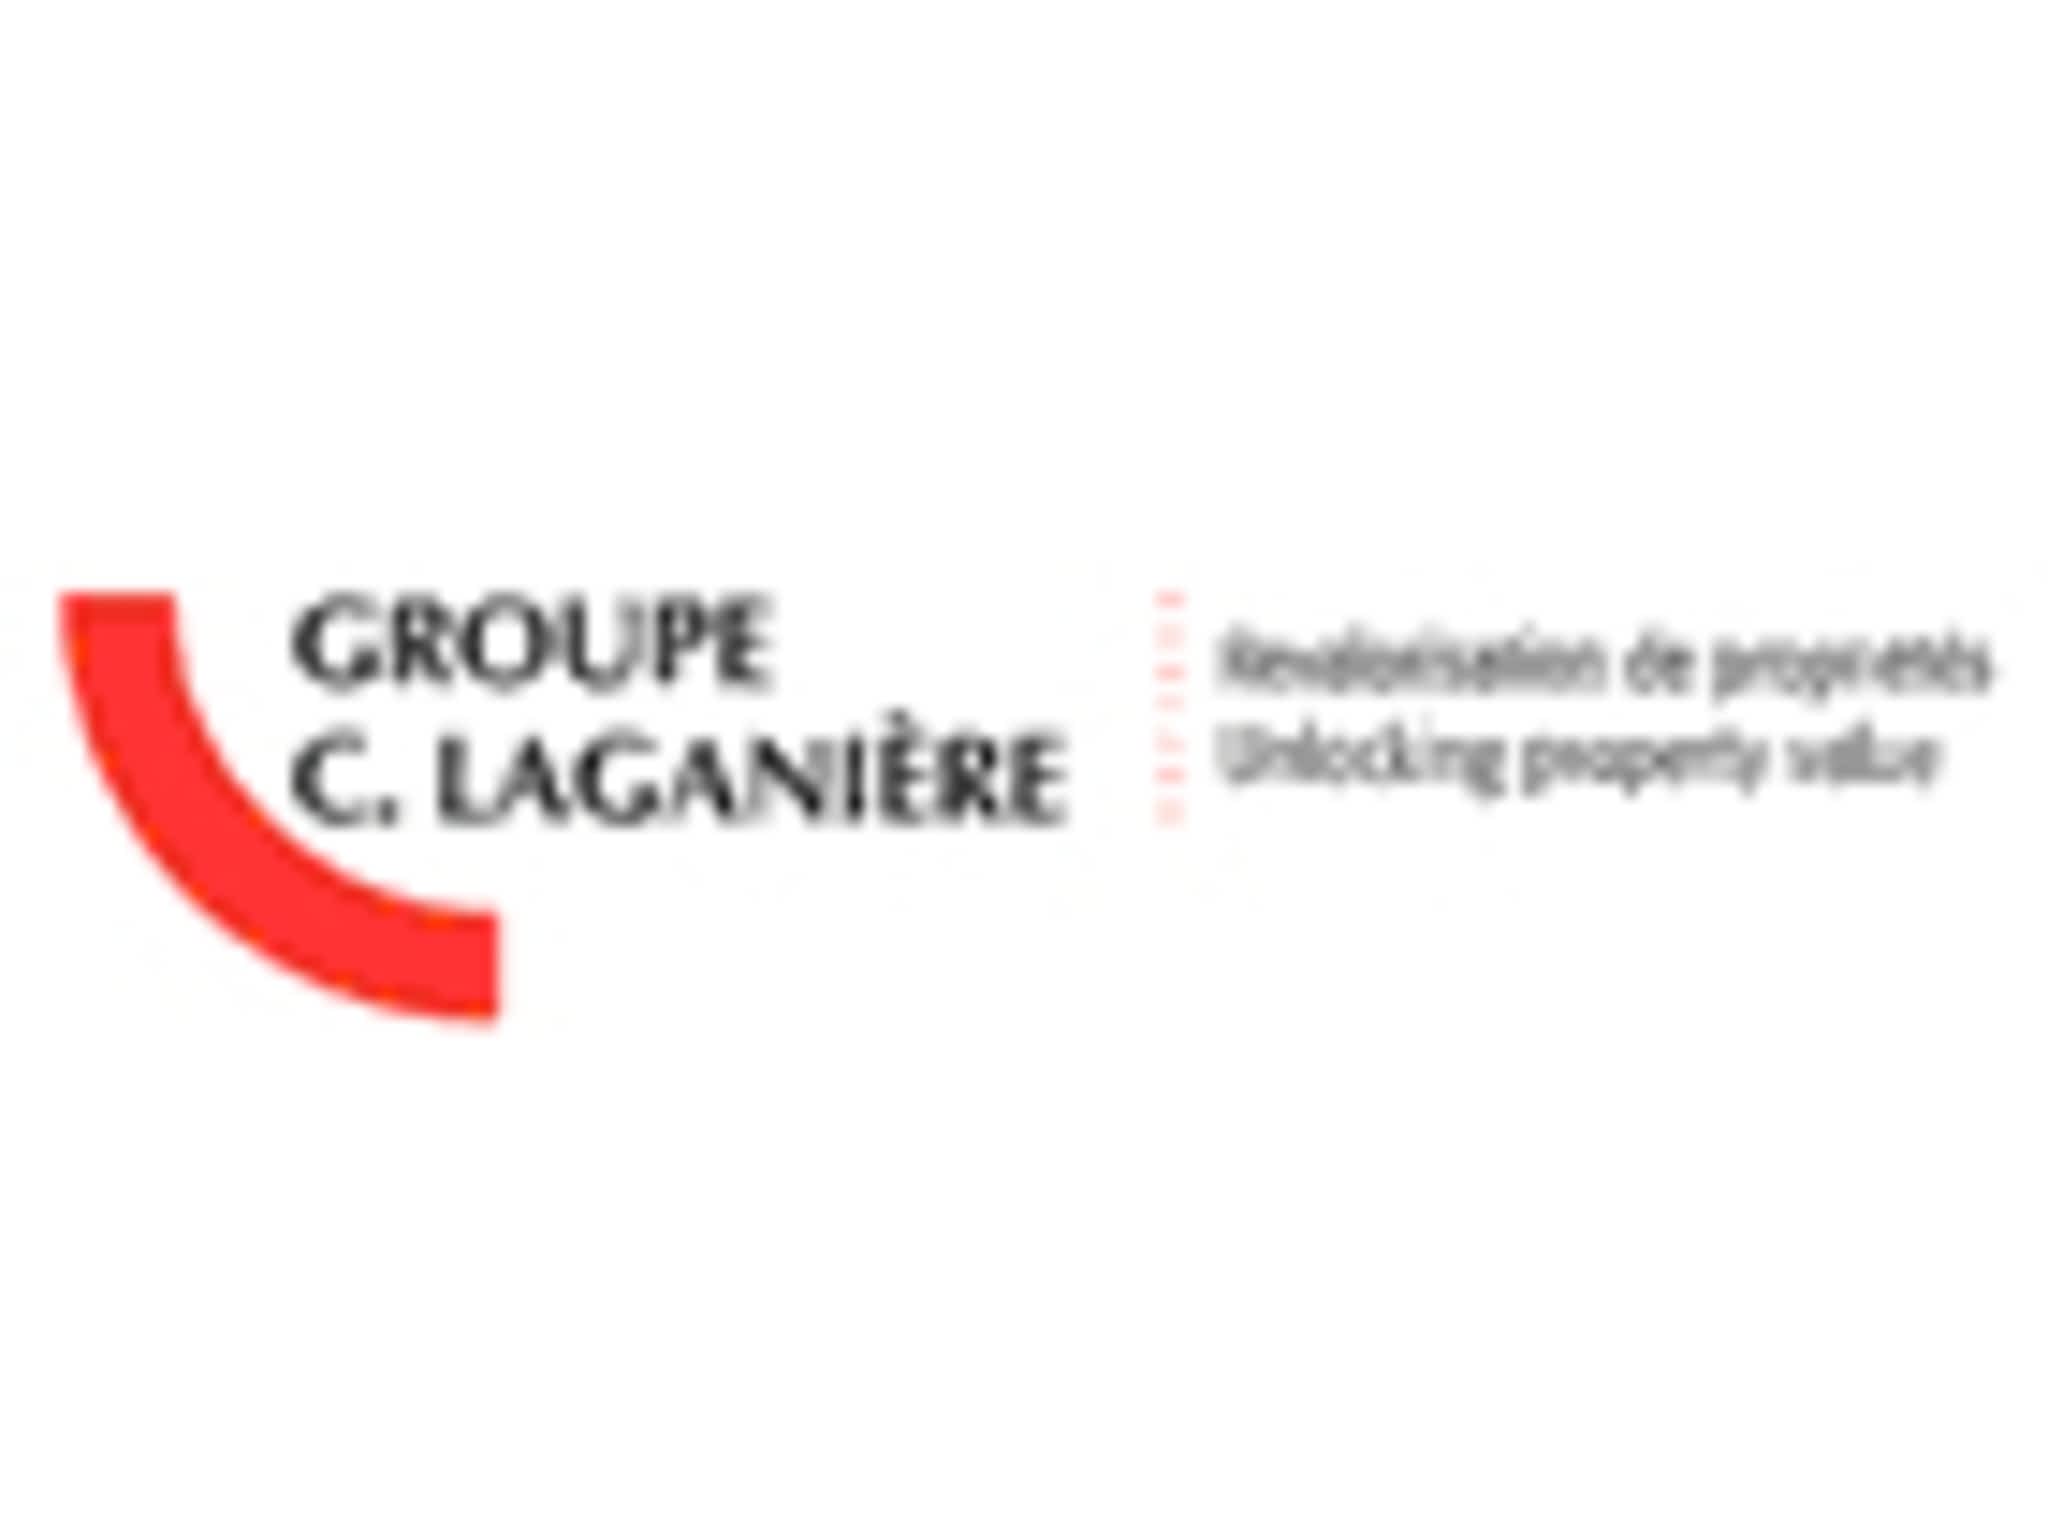 photo Groupe C Laganière (1995) Inc